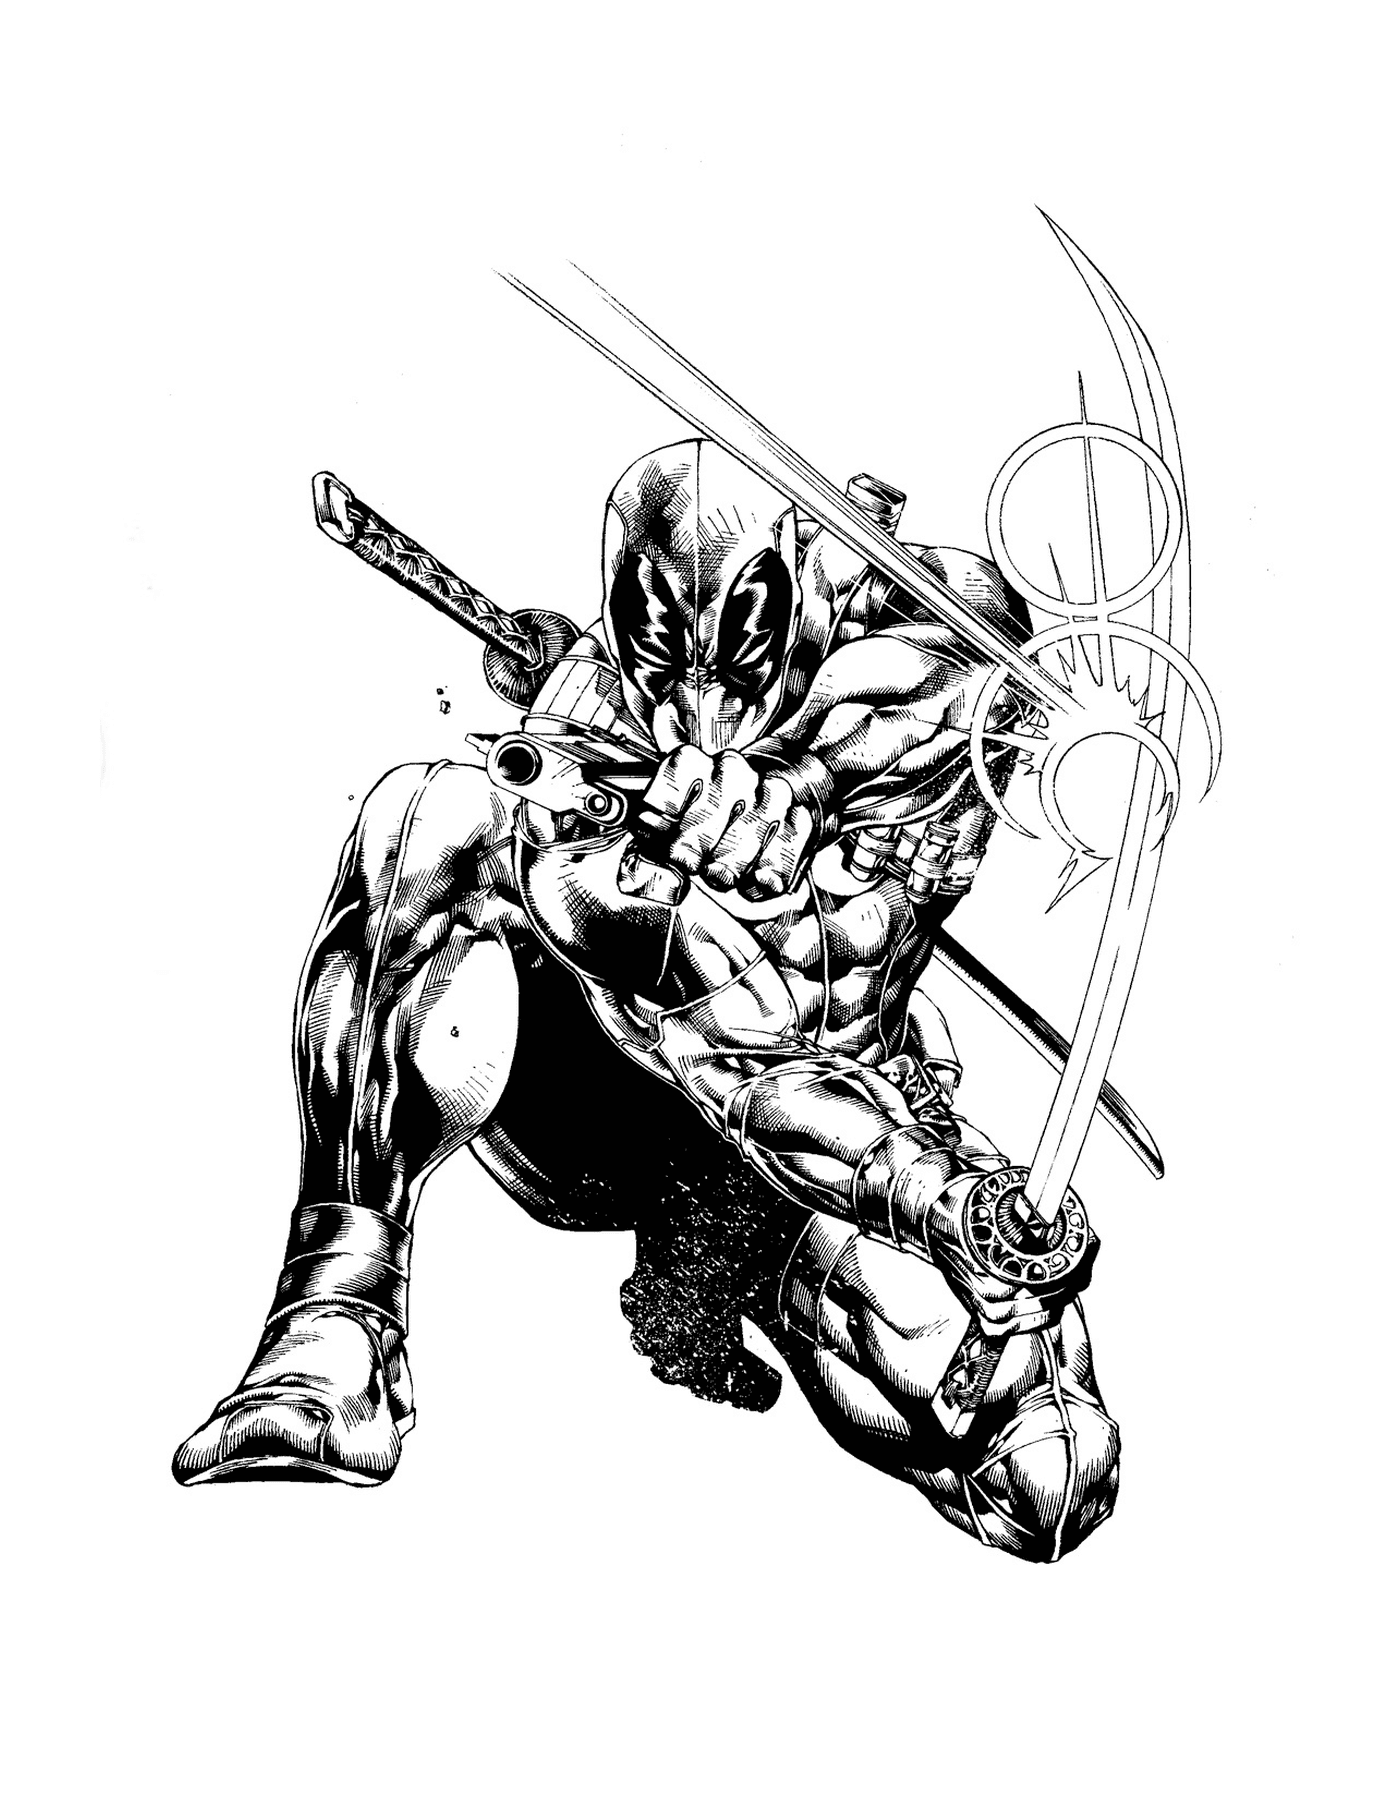  Deadpool da Marvel com uma espada 